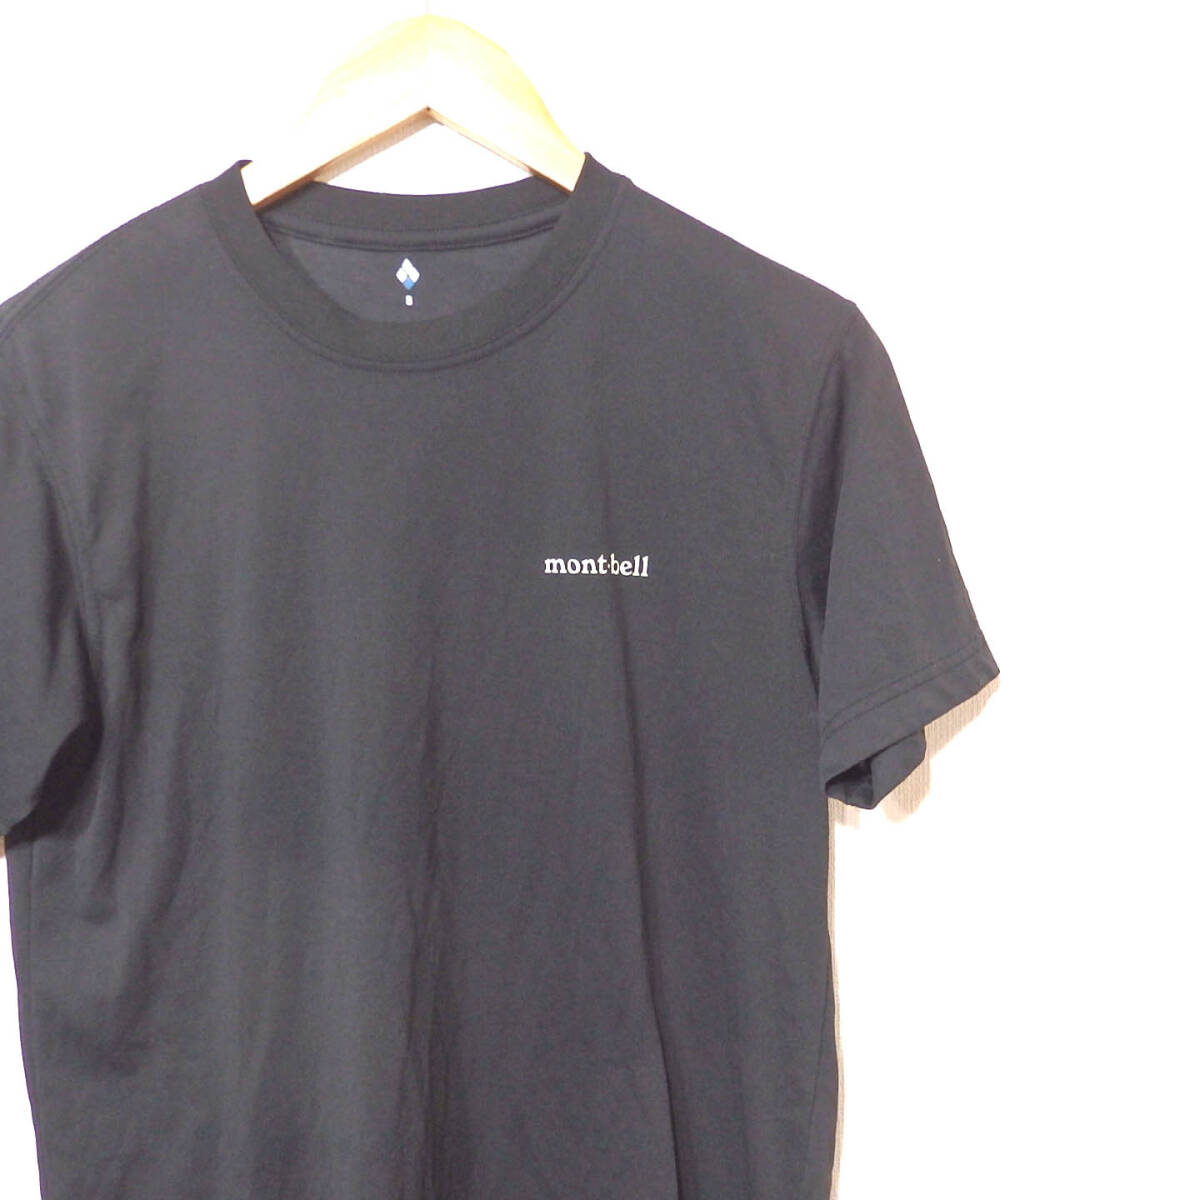 【送料無料】モンベルTシャツ/Sサイズ 美品ポリエステル素材 mont-bell1114110 [WIC.T ワンポイントロゴ )の画像2